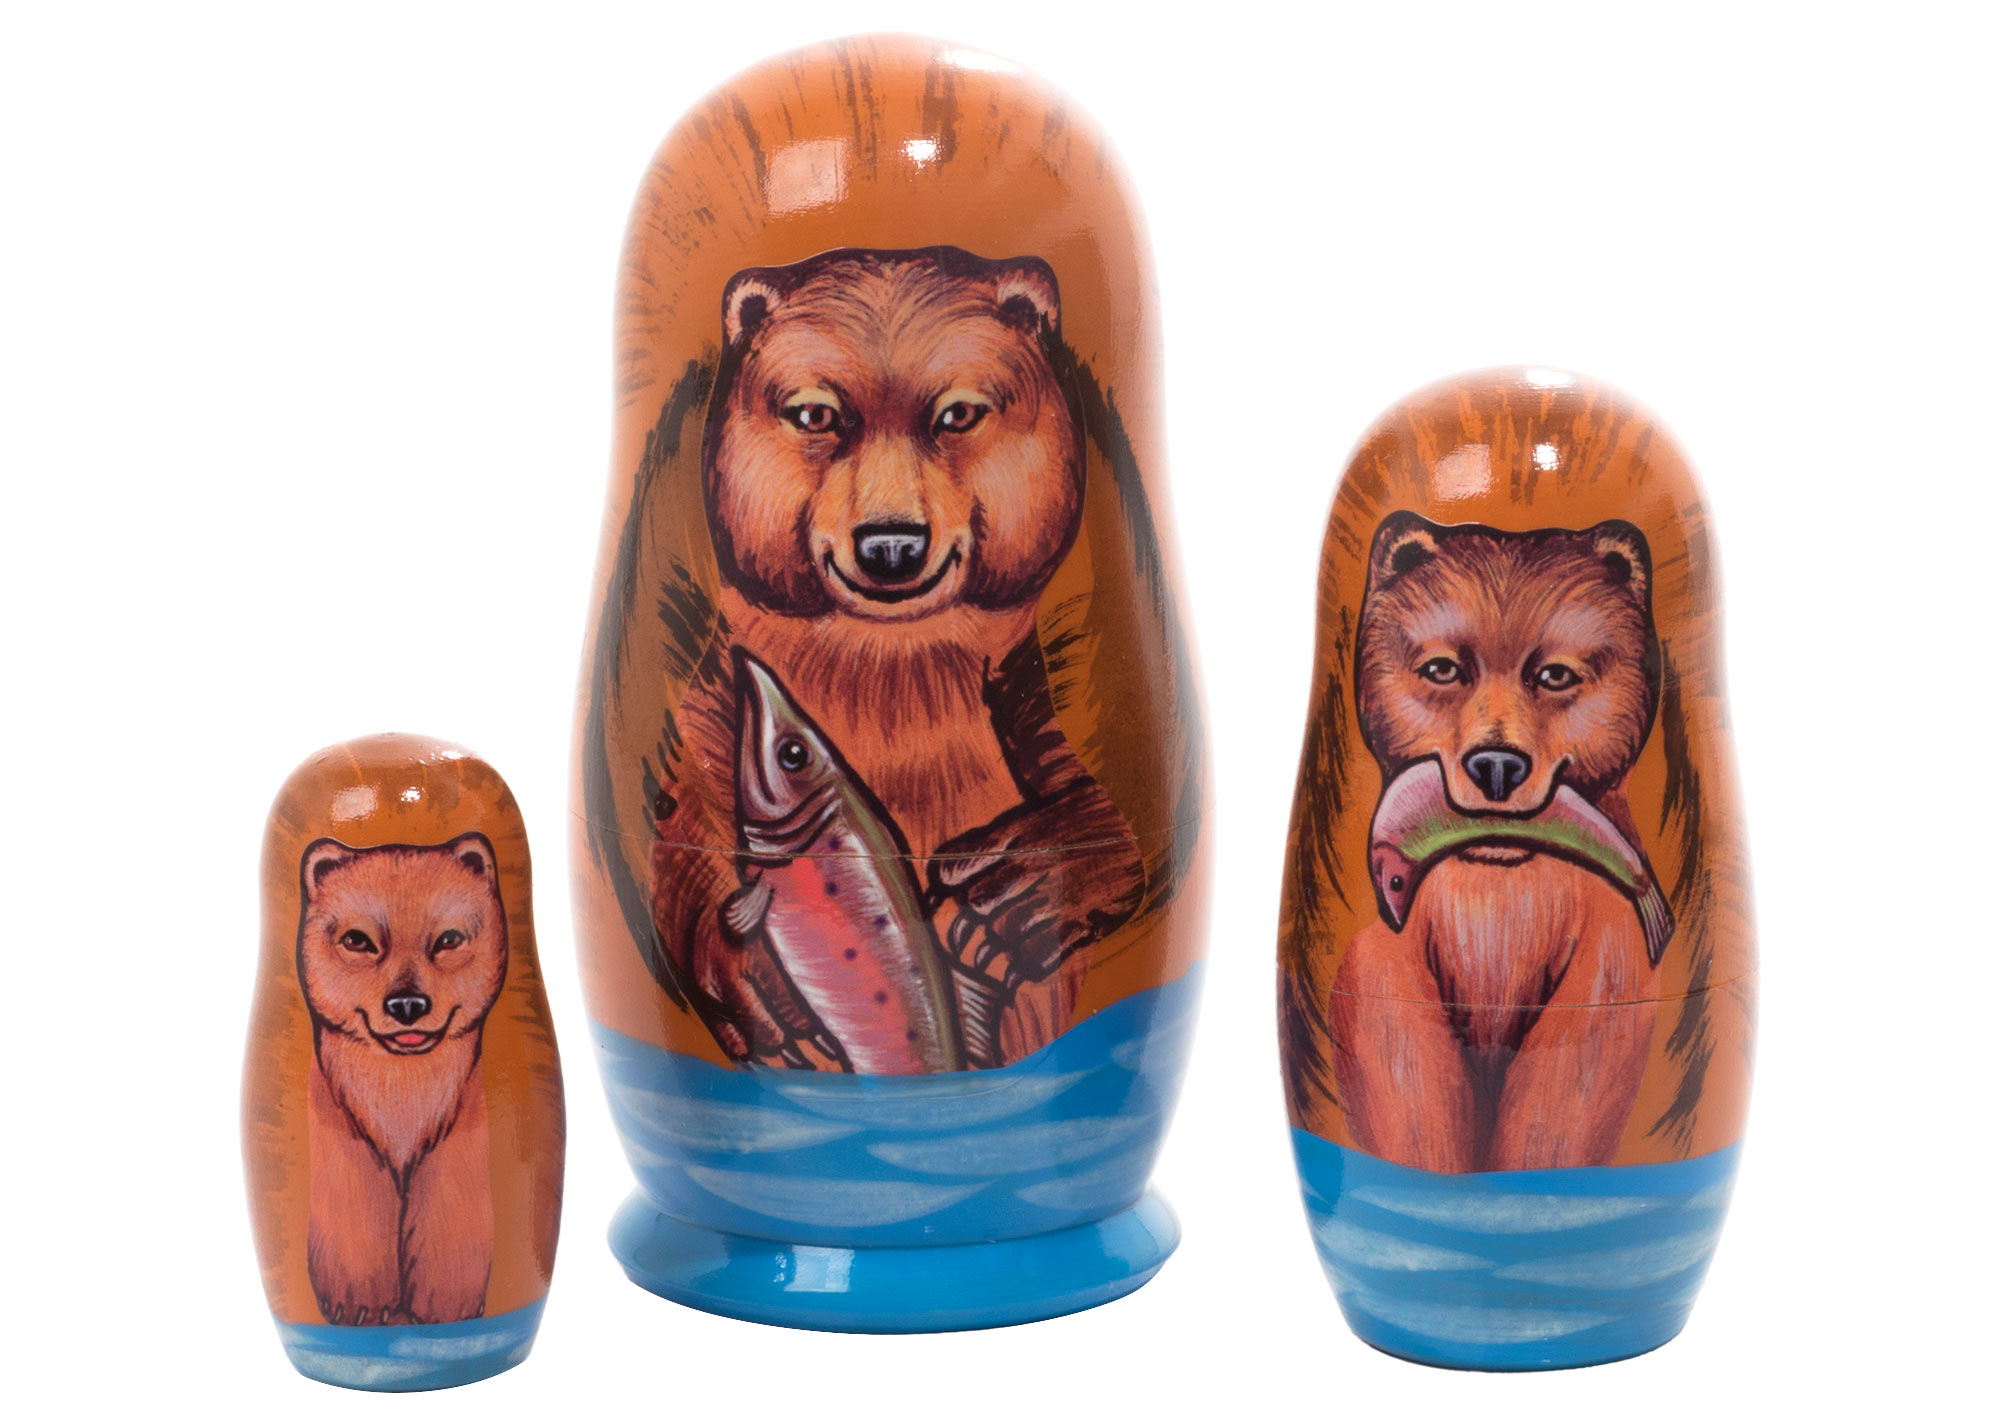 Buy Матрешка «Медведь гризли» 3 места 9 см at GoldenCockerel.com